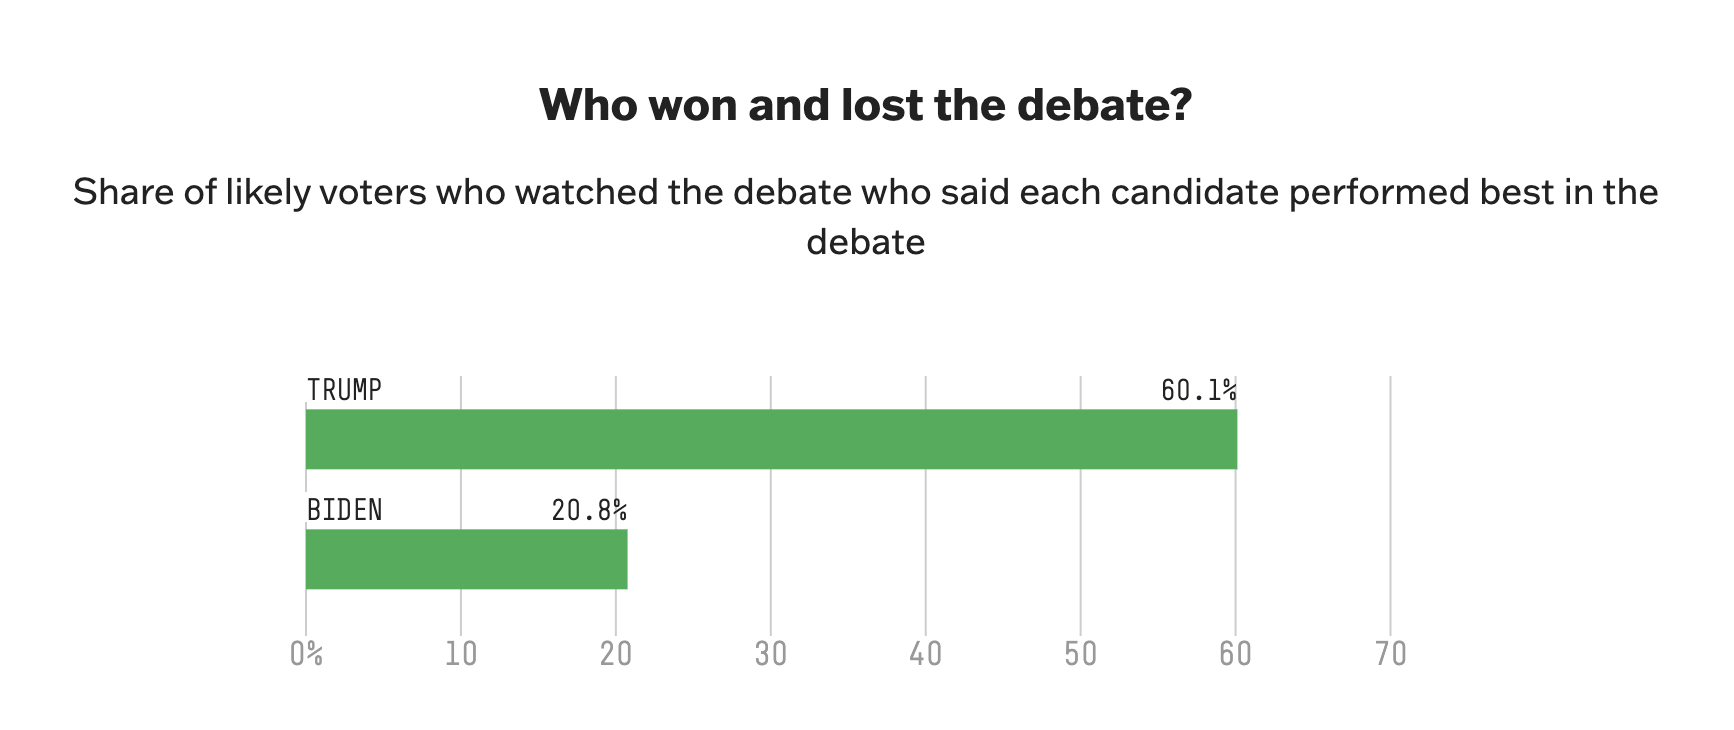 Байден проиграл дебаты, но не потерял поддержку избирателей: результаты опроса